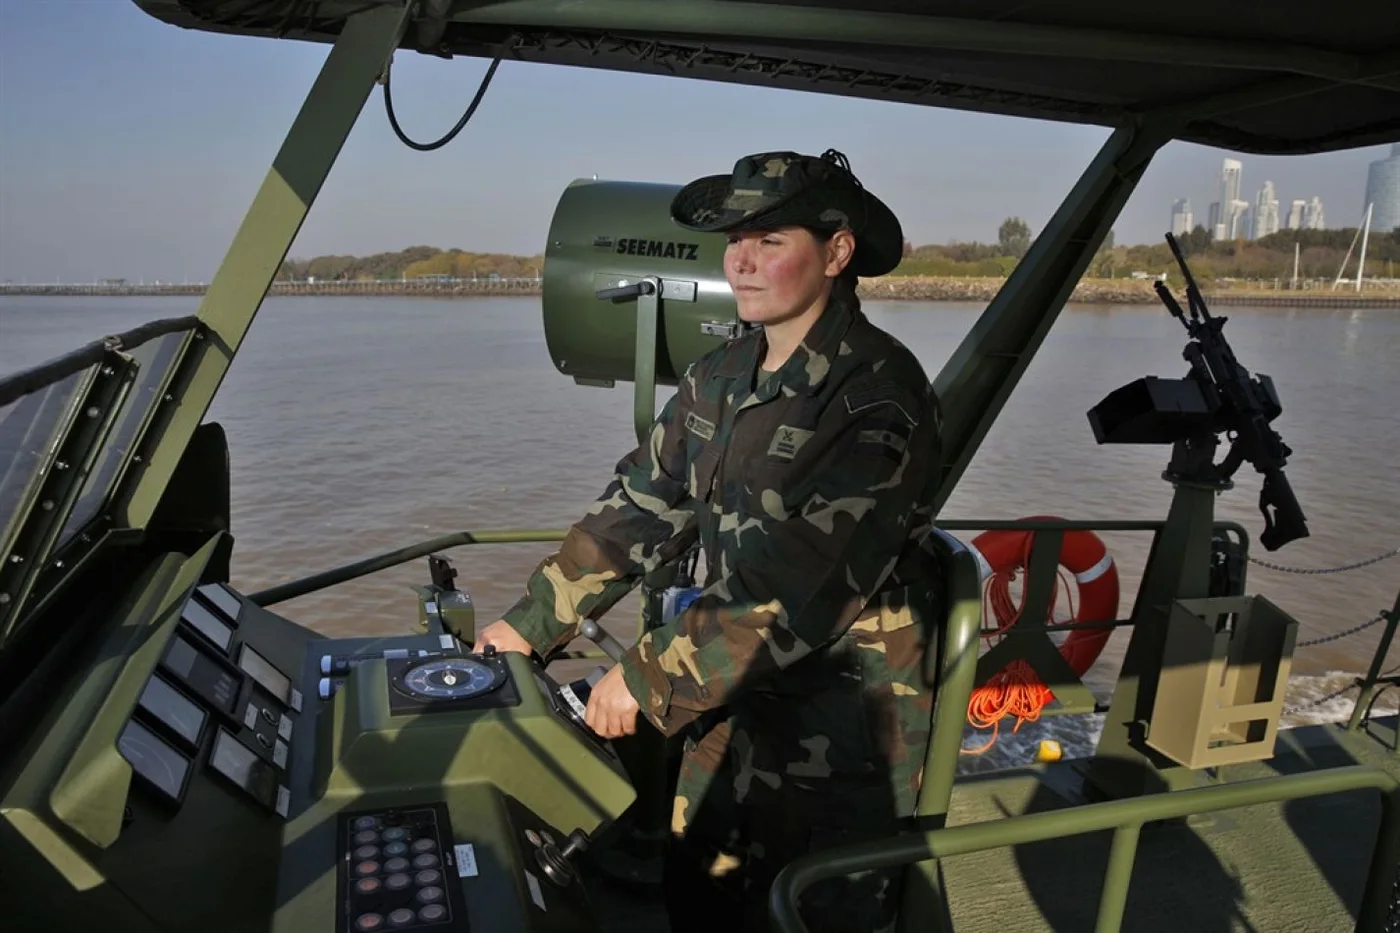 La subprefecta Lorena Franceschi forma parte de la segunda promoción de mujeres de la Prefectura Naval